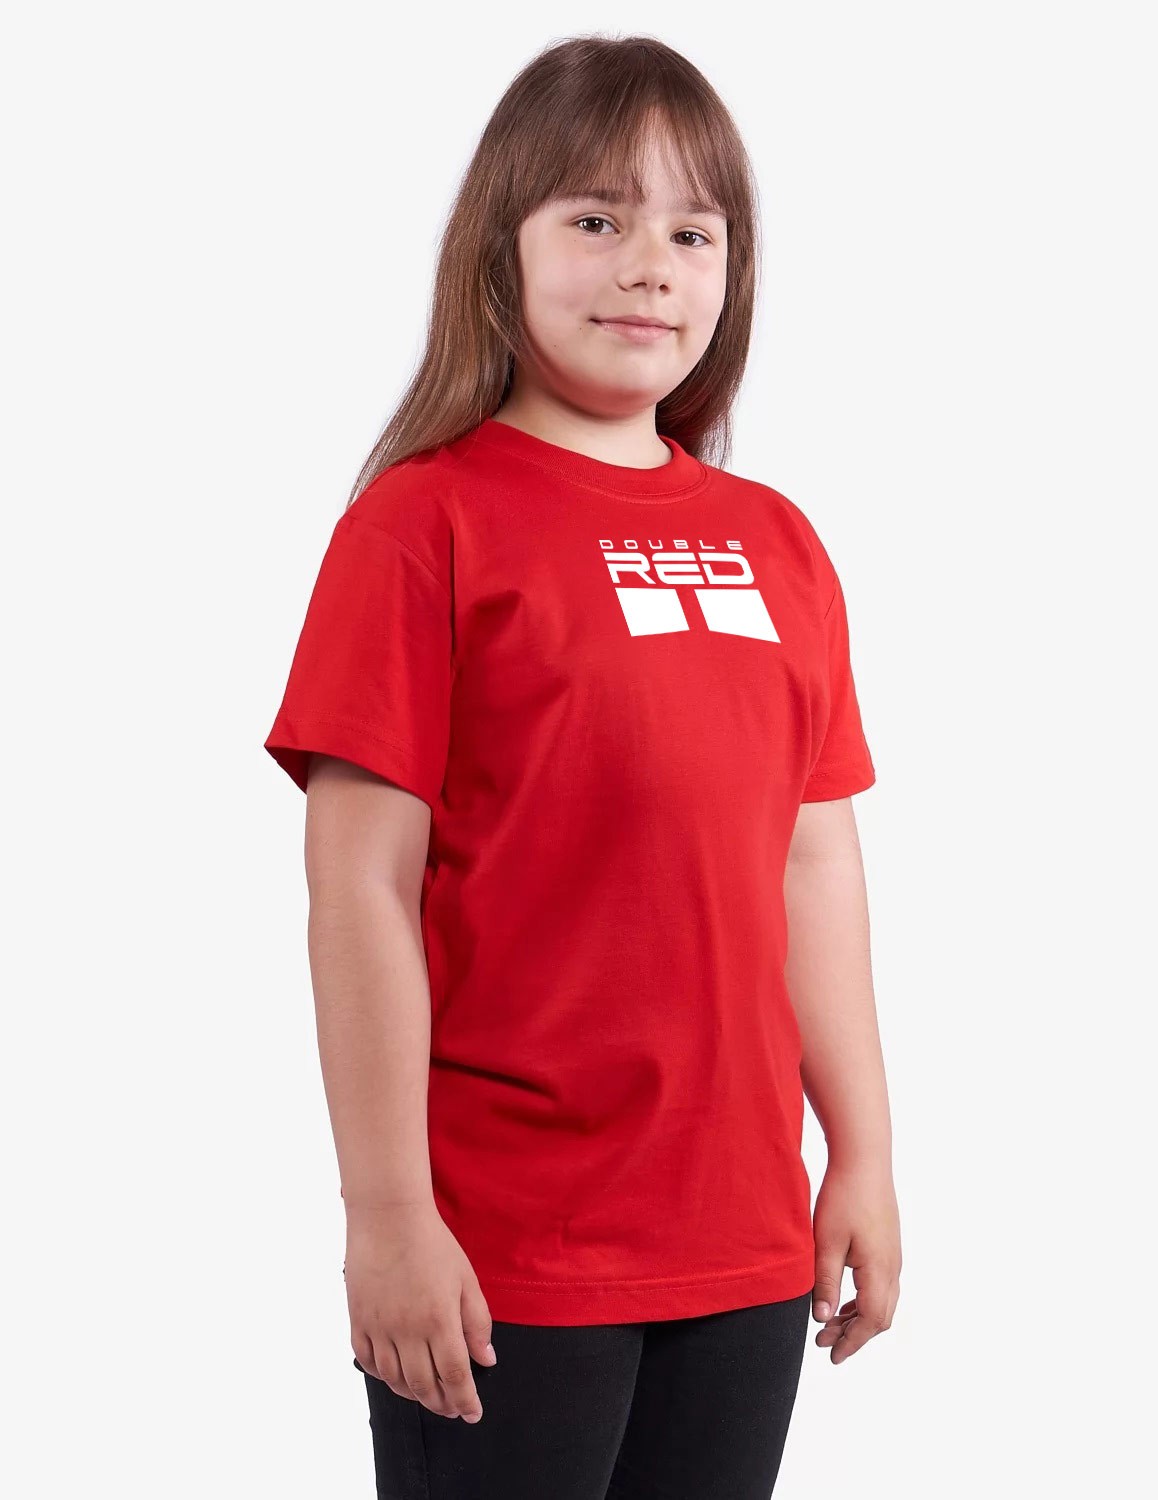 T-shirt CARBONARO™ KID Red